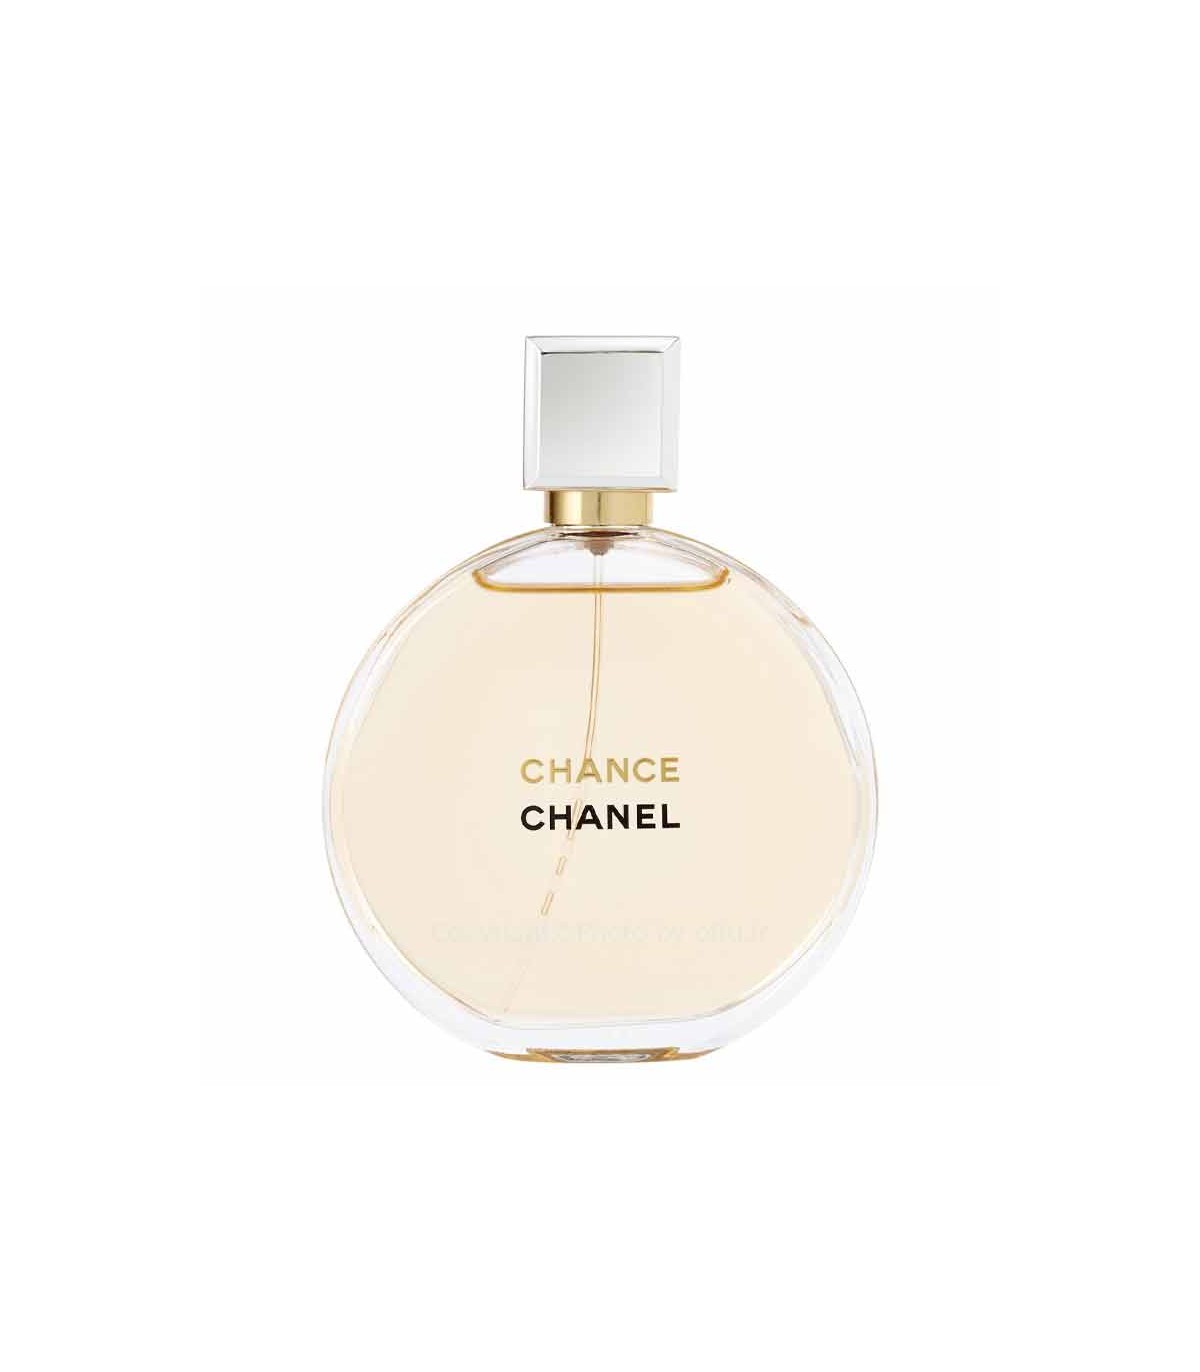 مشاهده قیمت و خرید ادکلن زنانه فول شنل چنس او تندر Full Chanel Chance ...